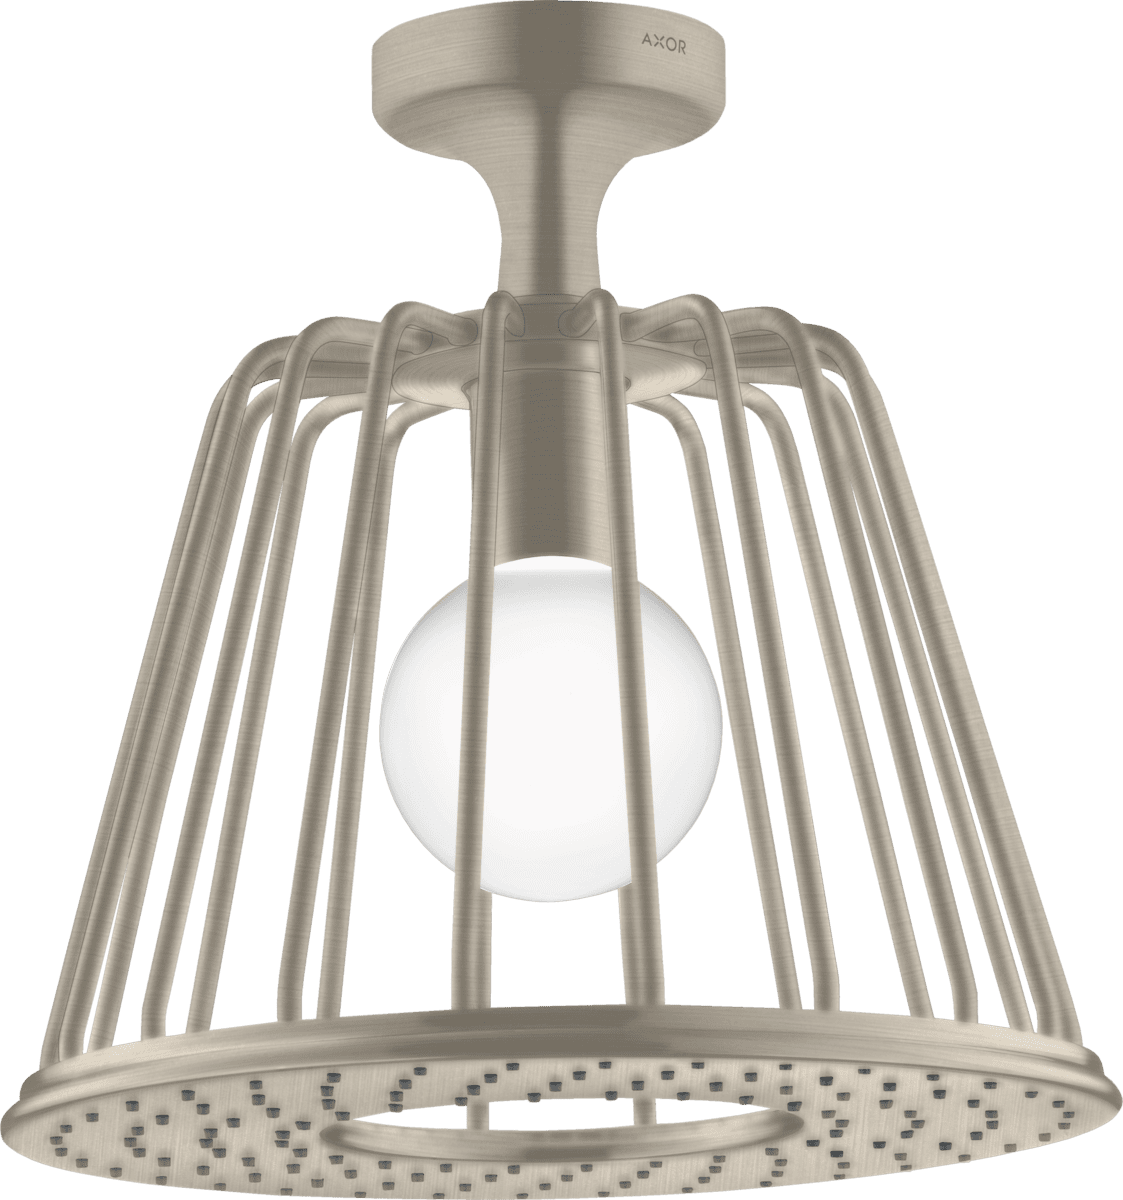 HANSGROHE AXOR LampShower/Nendo LampShower 275 1jet tavan bağlantılı #26032820 - Mat Nikel resmi